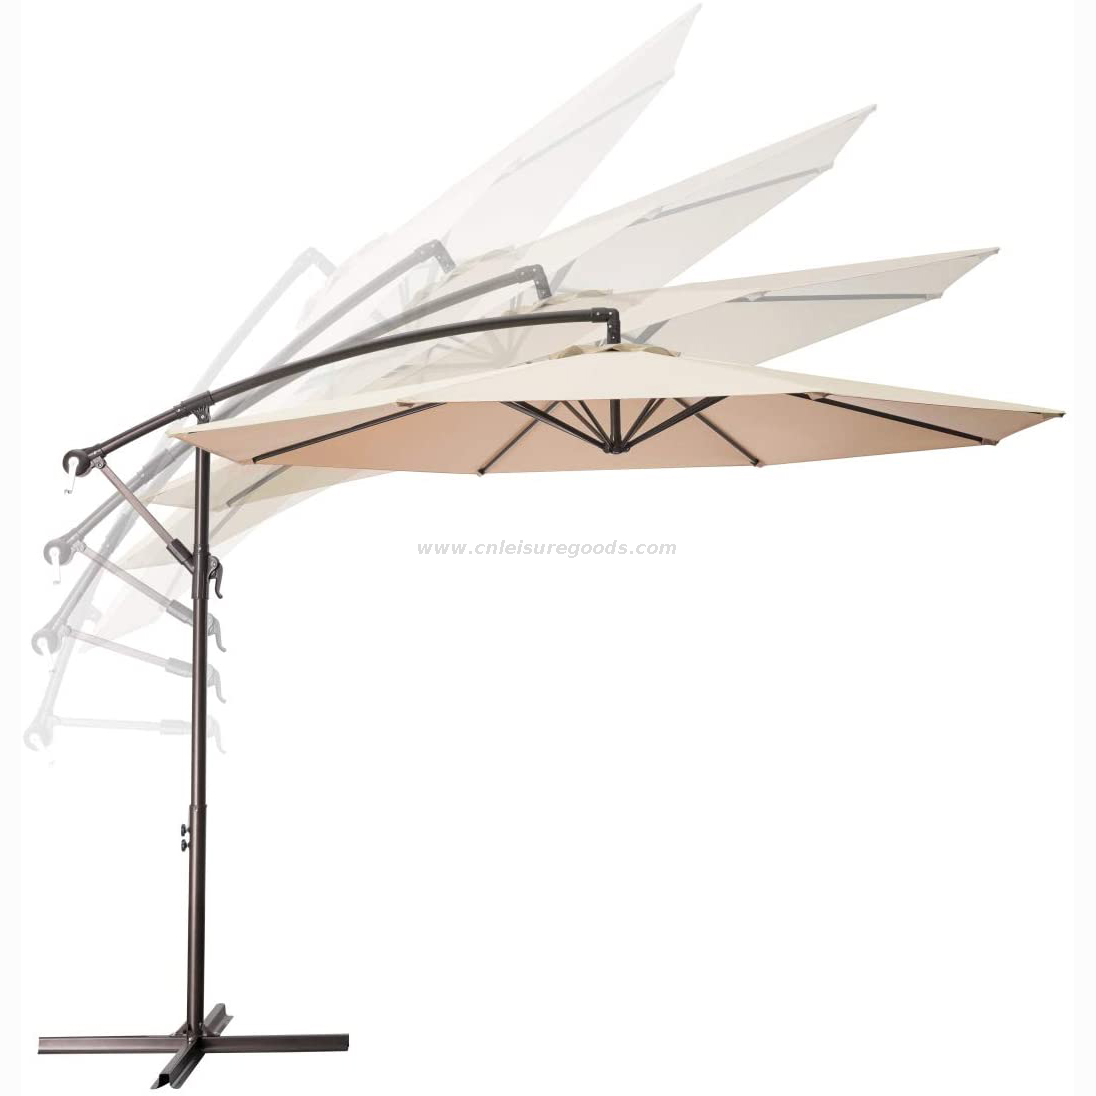 Uplion 10ft Easy Install Outdoor Backyard Umbrella with Cross Base Cantilever Patio Offset Umbrella Parasol